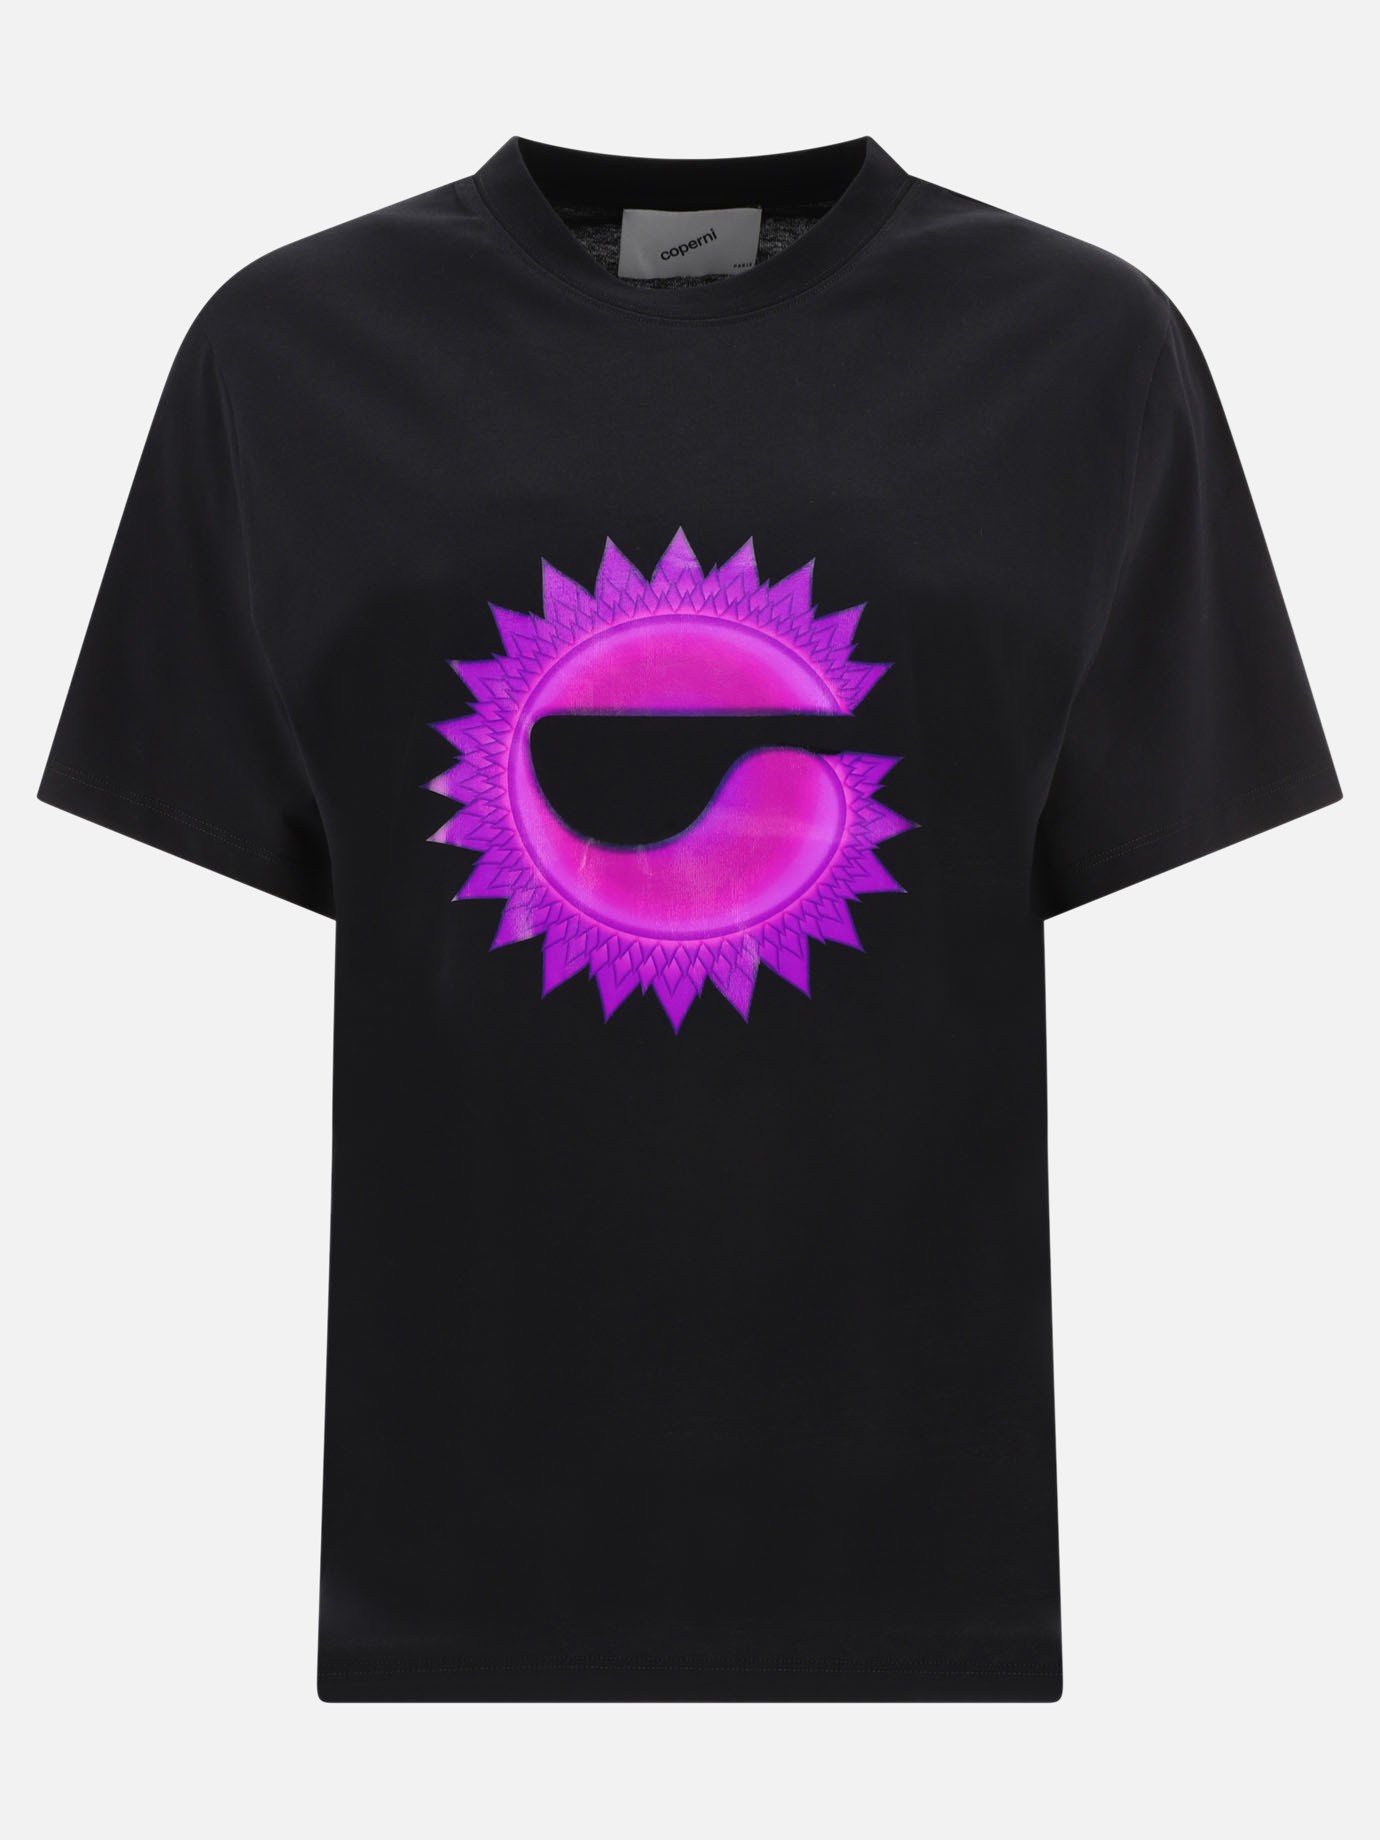  Chakra  t-shirtby Coperni - 5